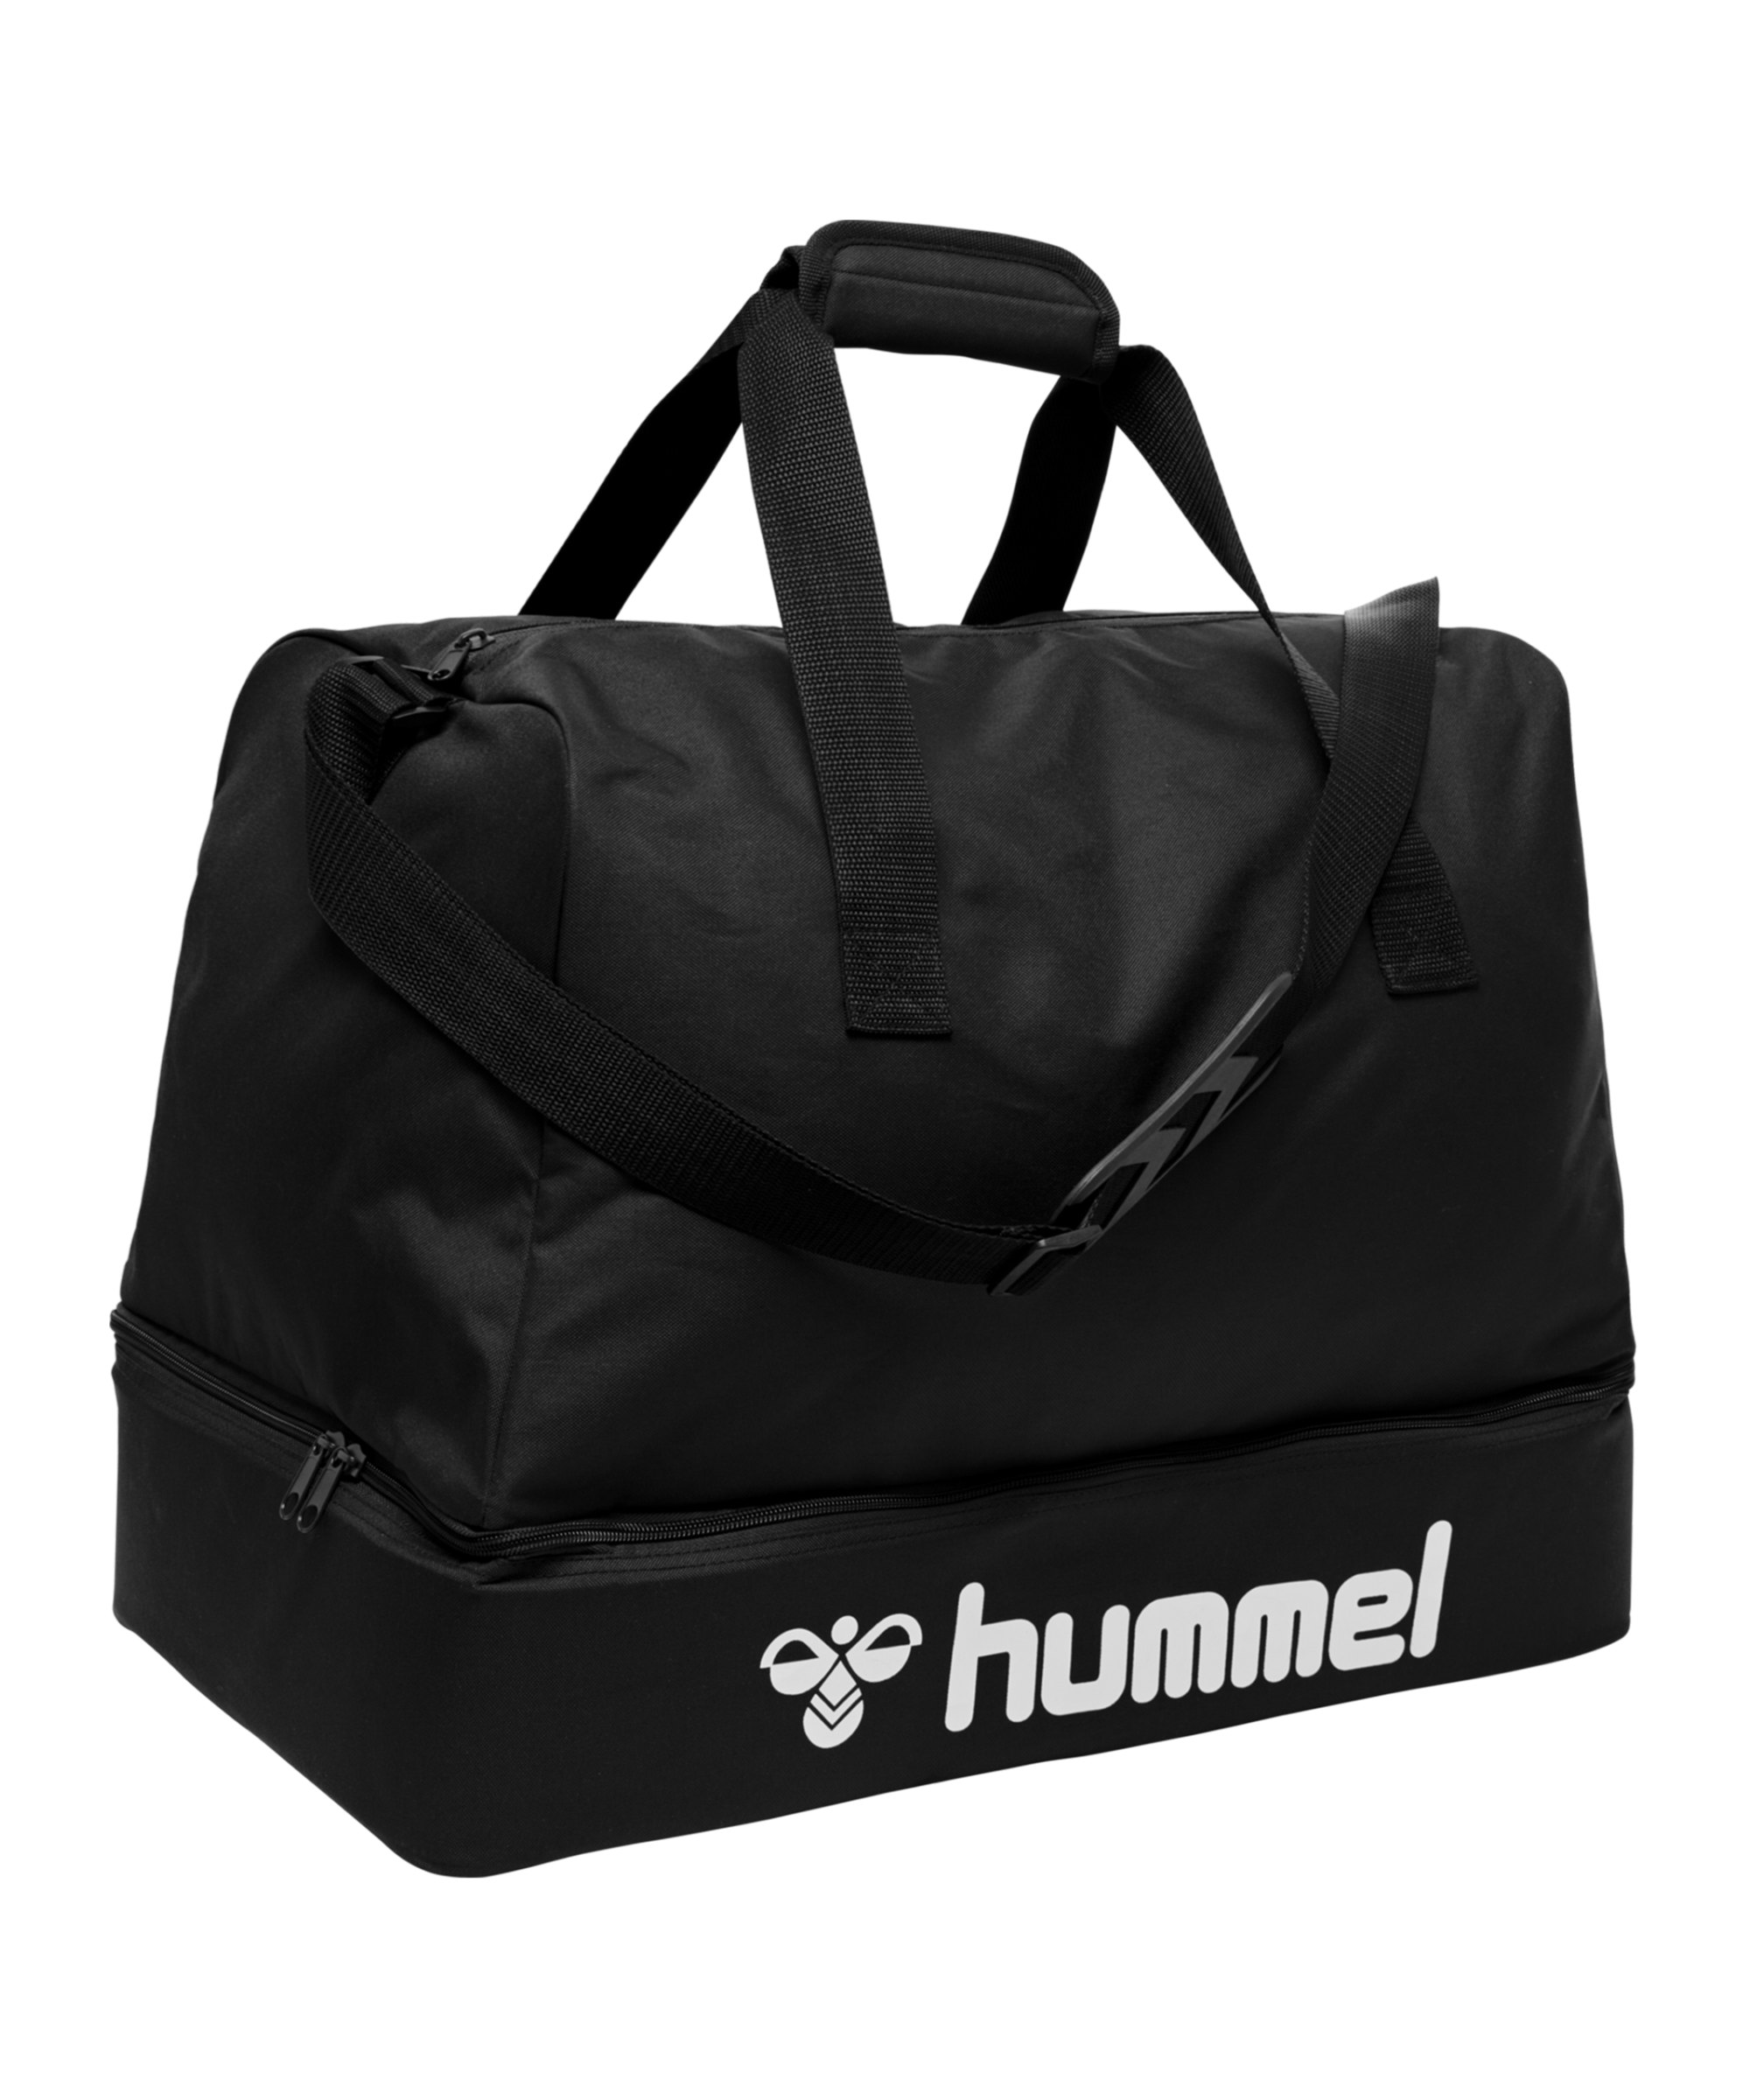 Hummel Core Football Bag Sporttasche Gr. S F2001 - schwarz